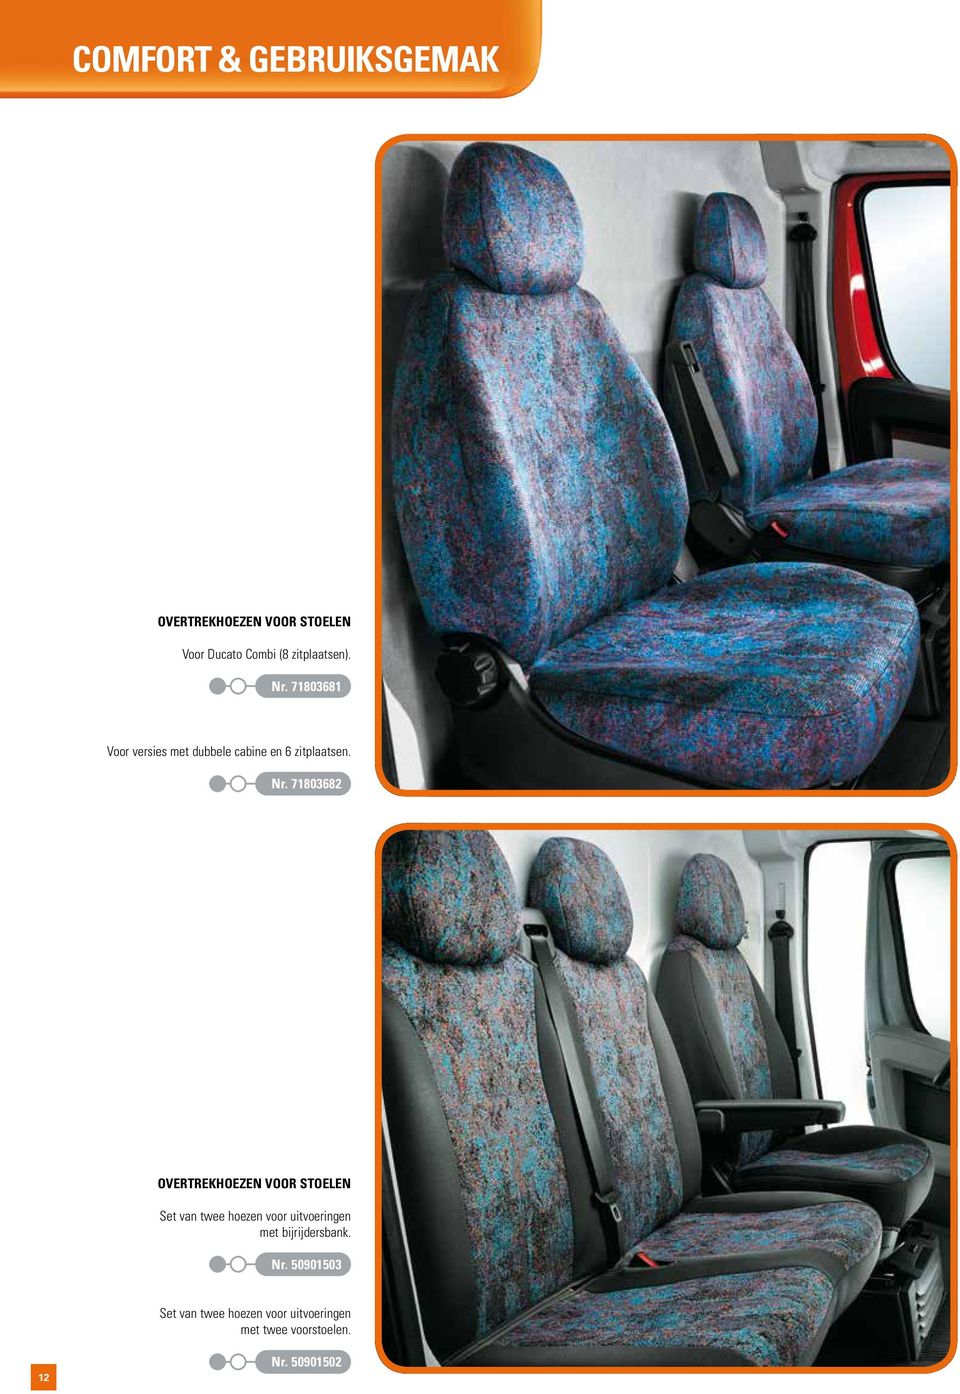 71803681 Voor versies met dubbele cabine en 6 zitplaatsen. Nr.